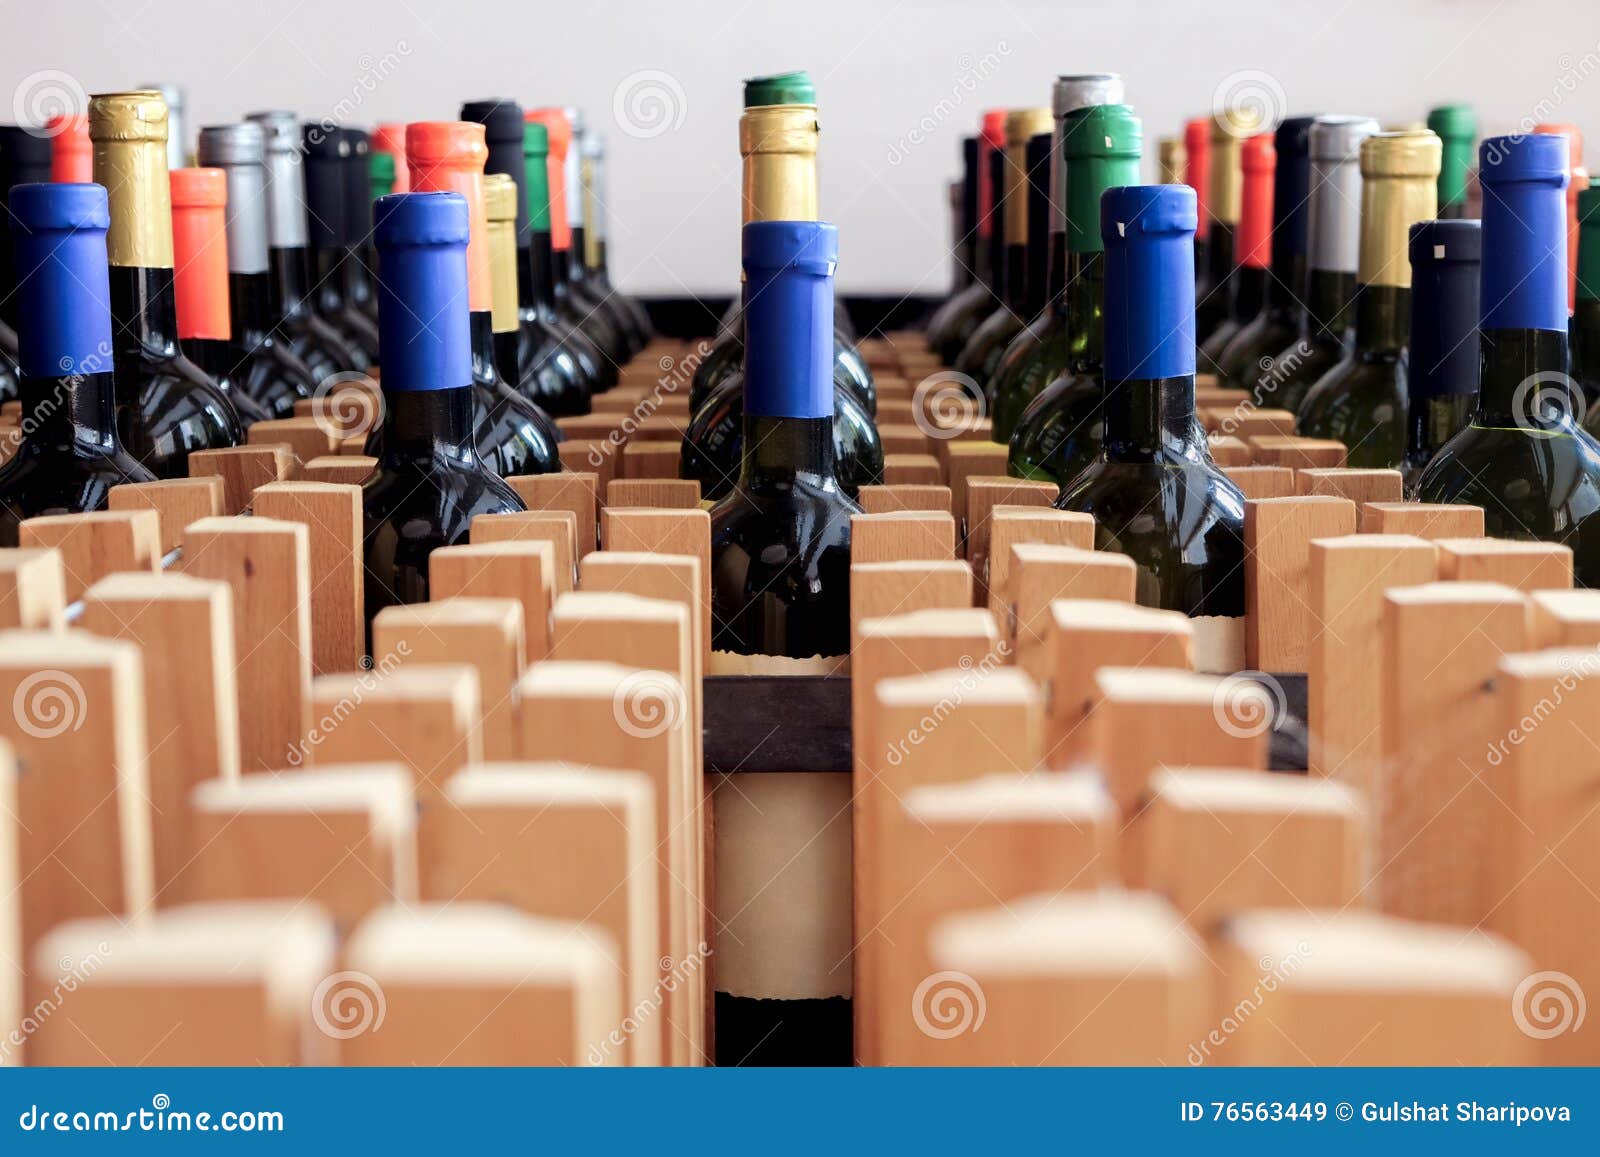 Aufkleber Flaschen Kostenlos - Wein Flaschen Aufkleber Aufkleber Nalewka Wein Png Herunterladen ...